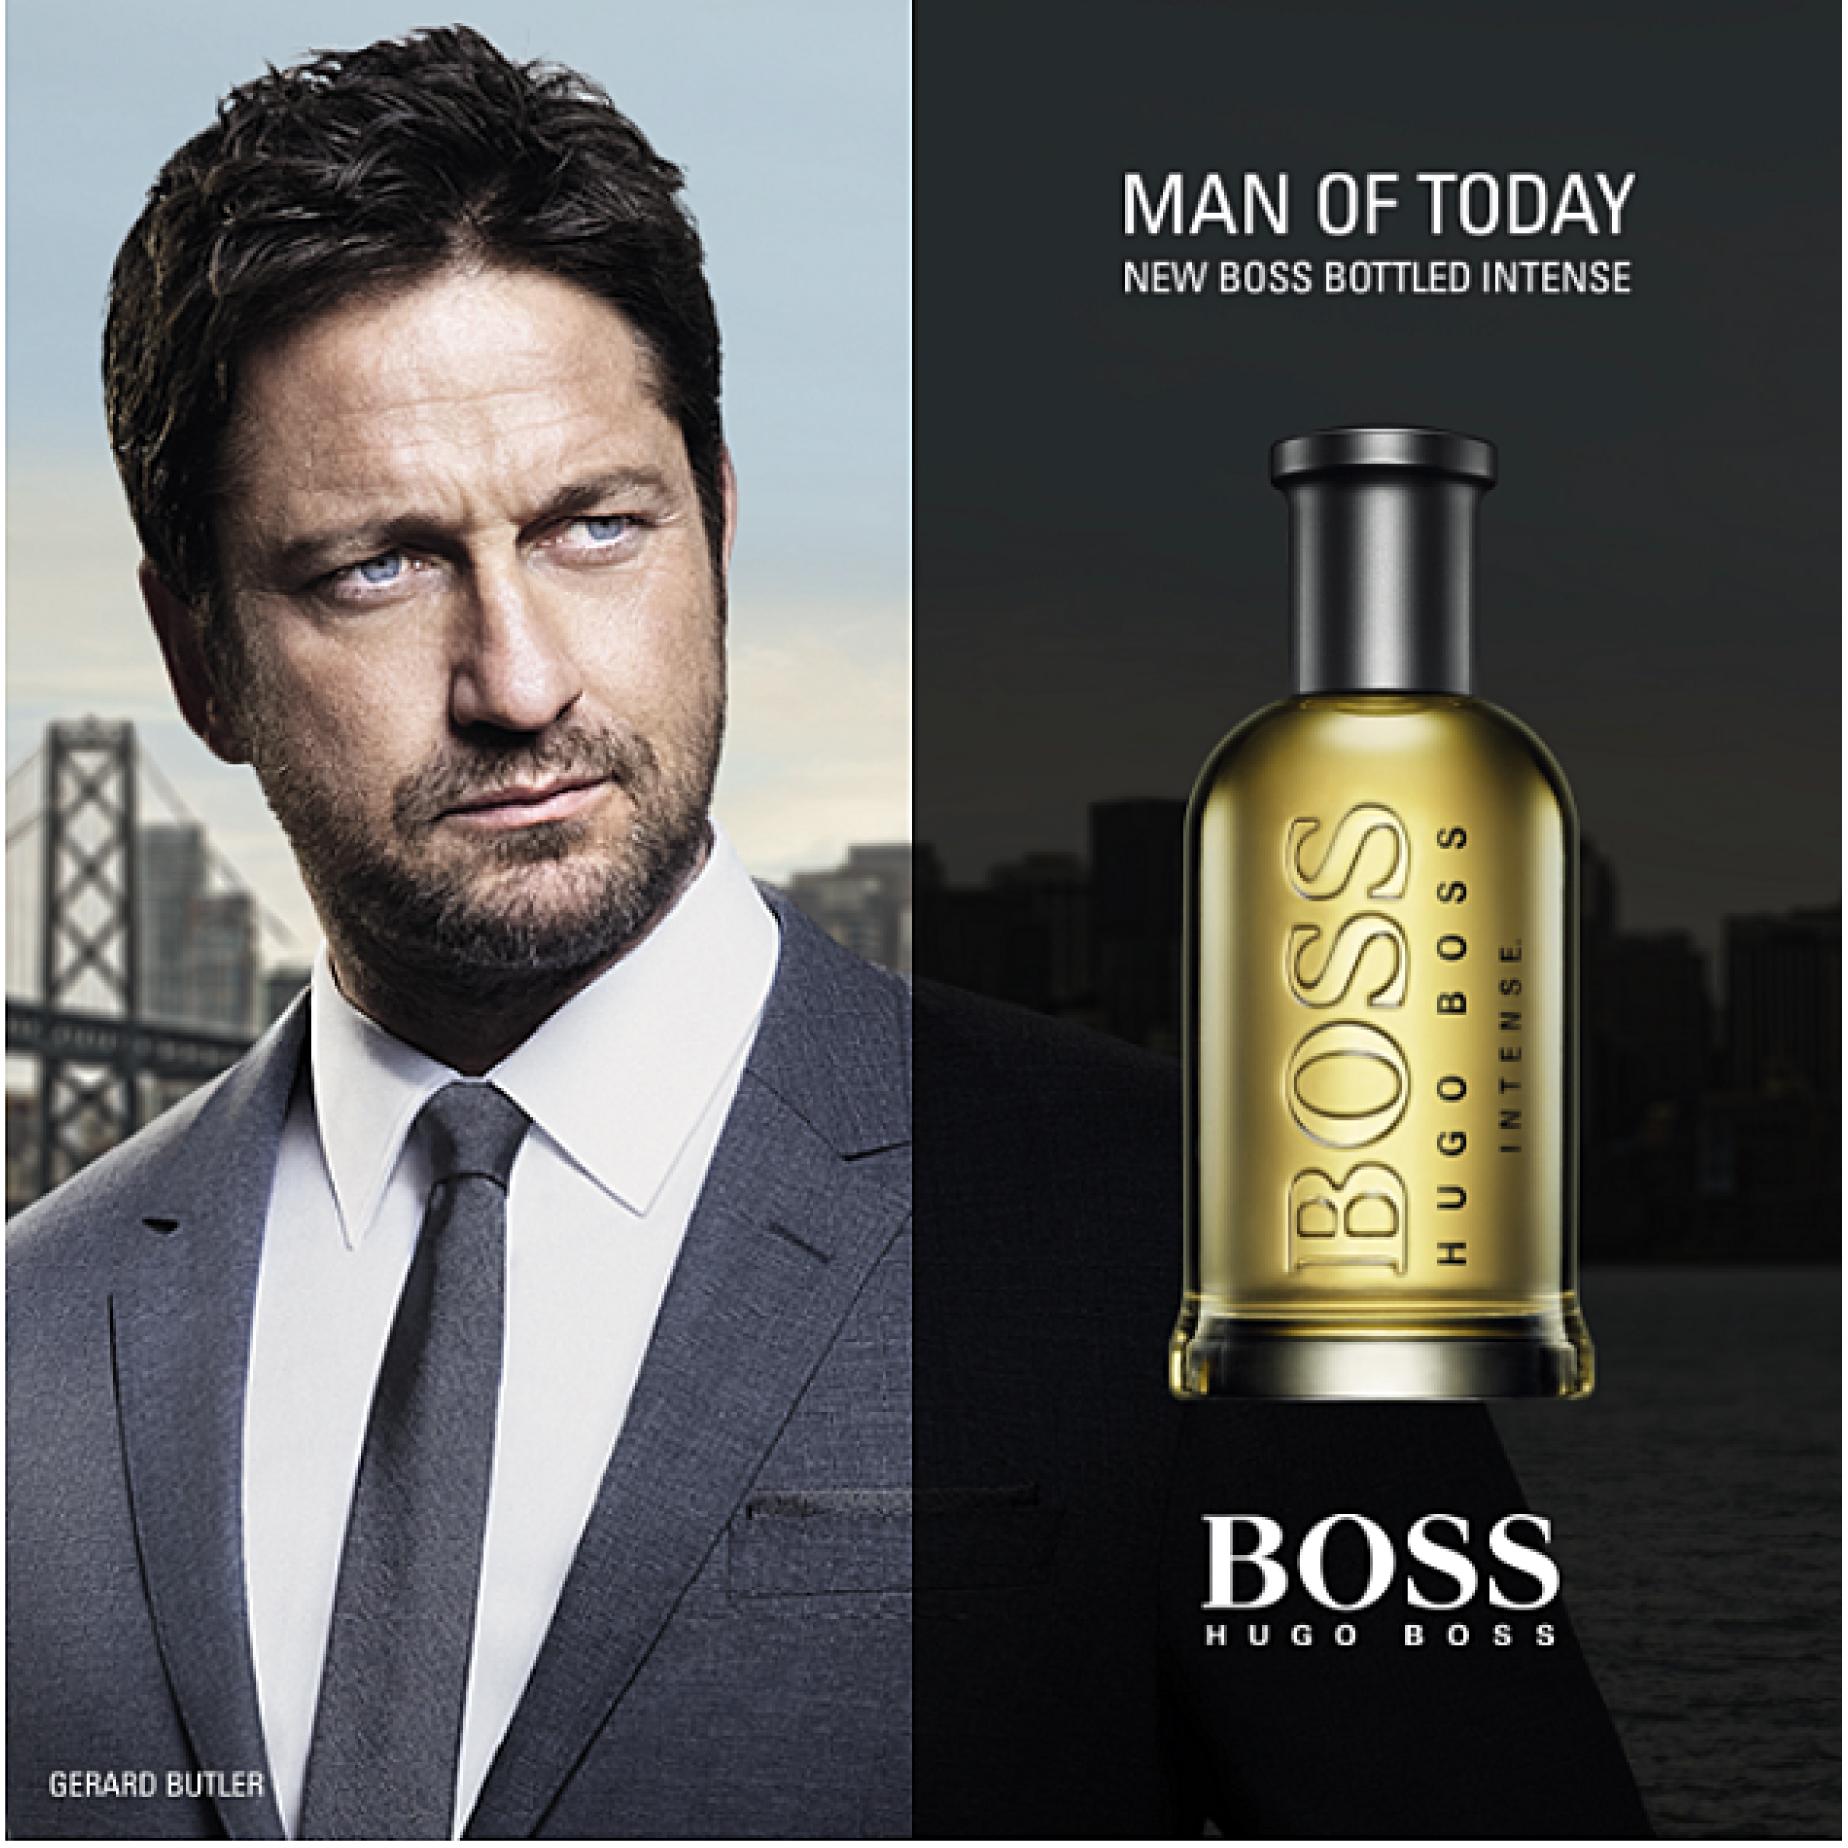 Boss Bottled Hugo Boss for men afiş poster commercial erkek manken.jpg